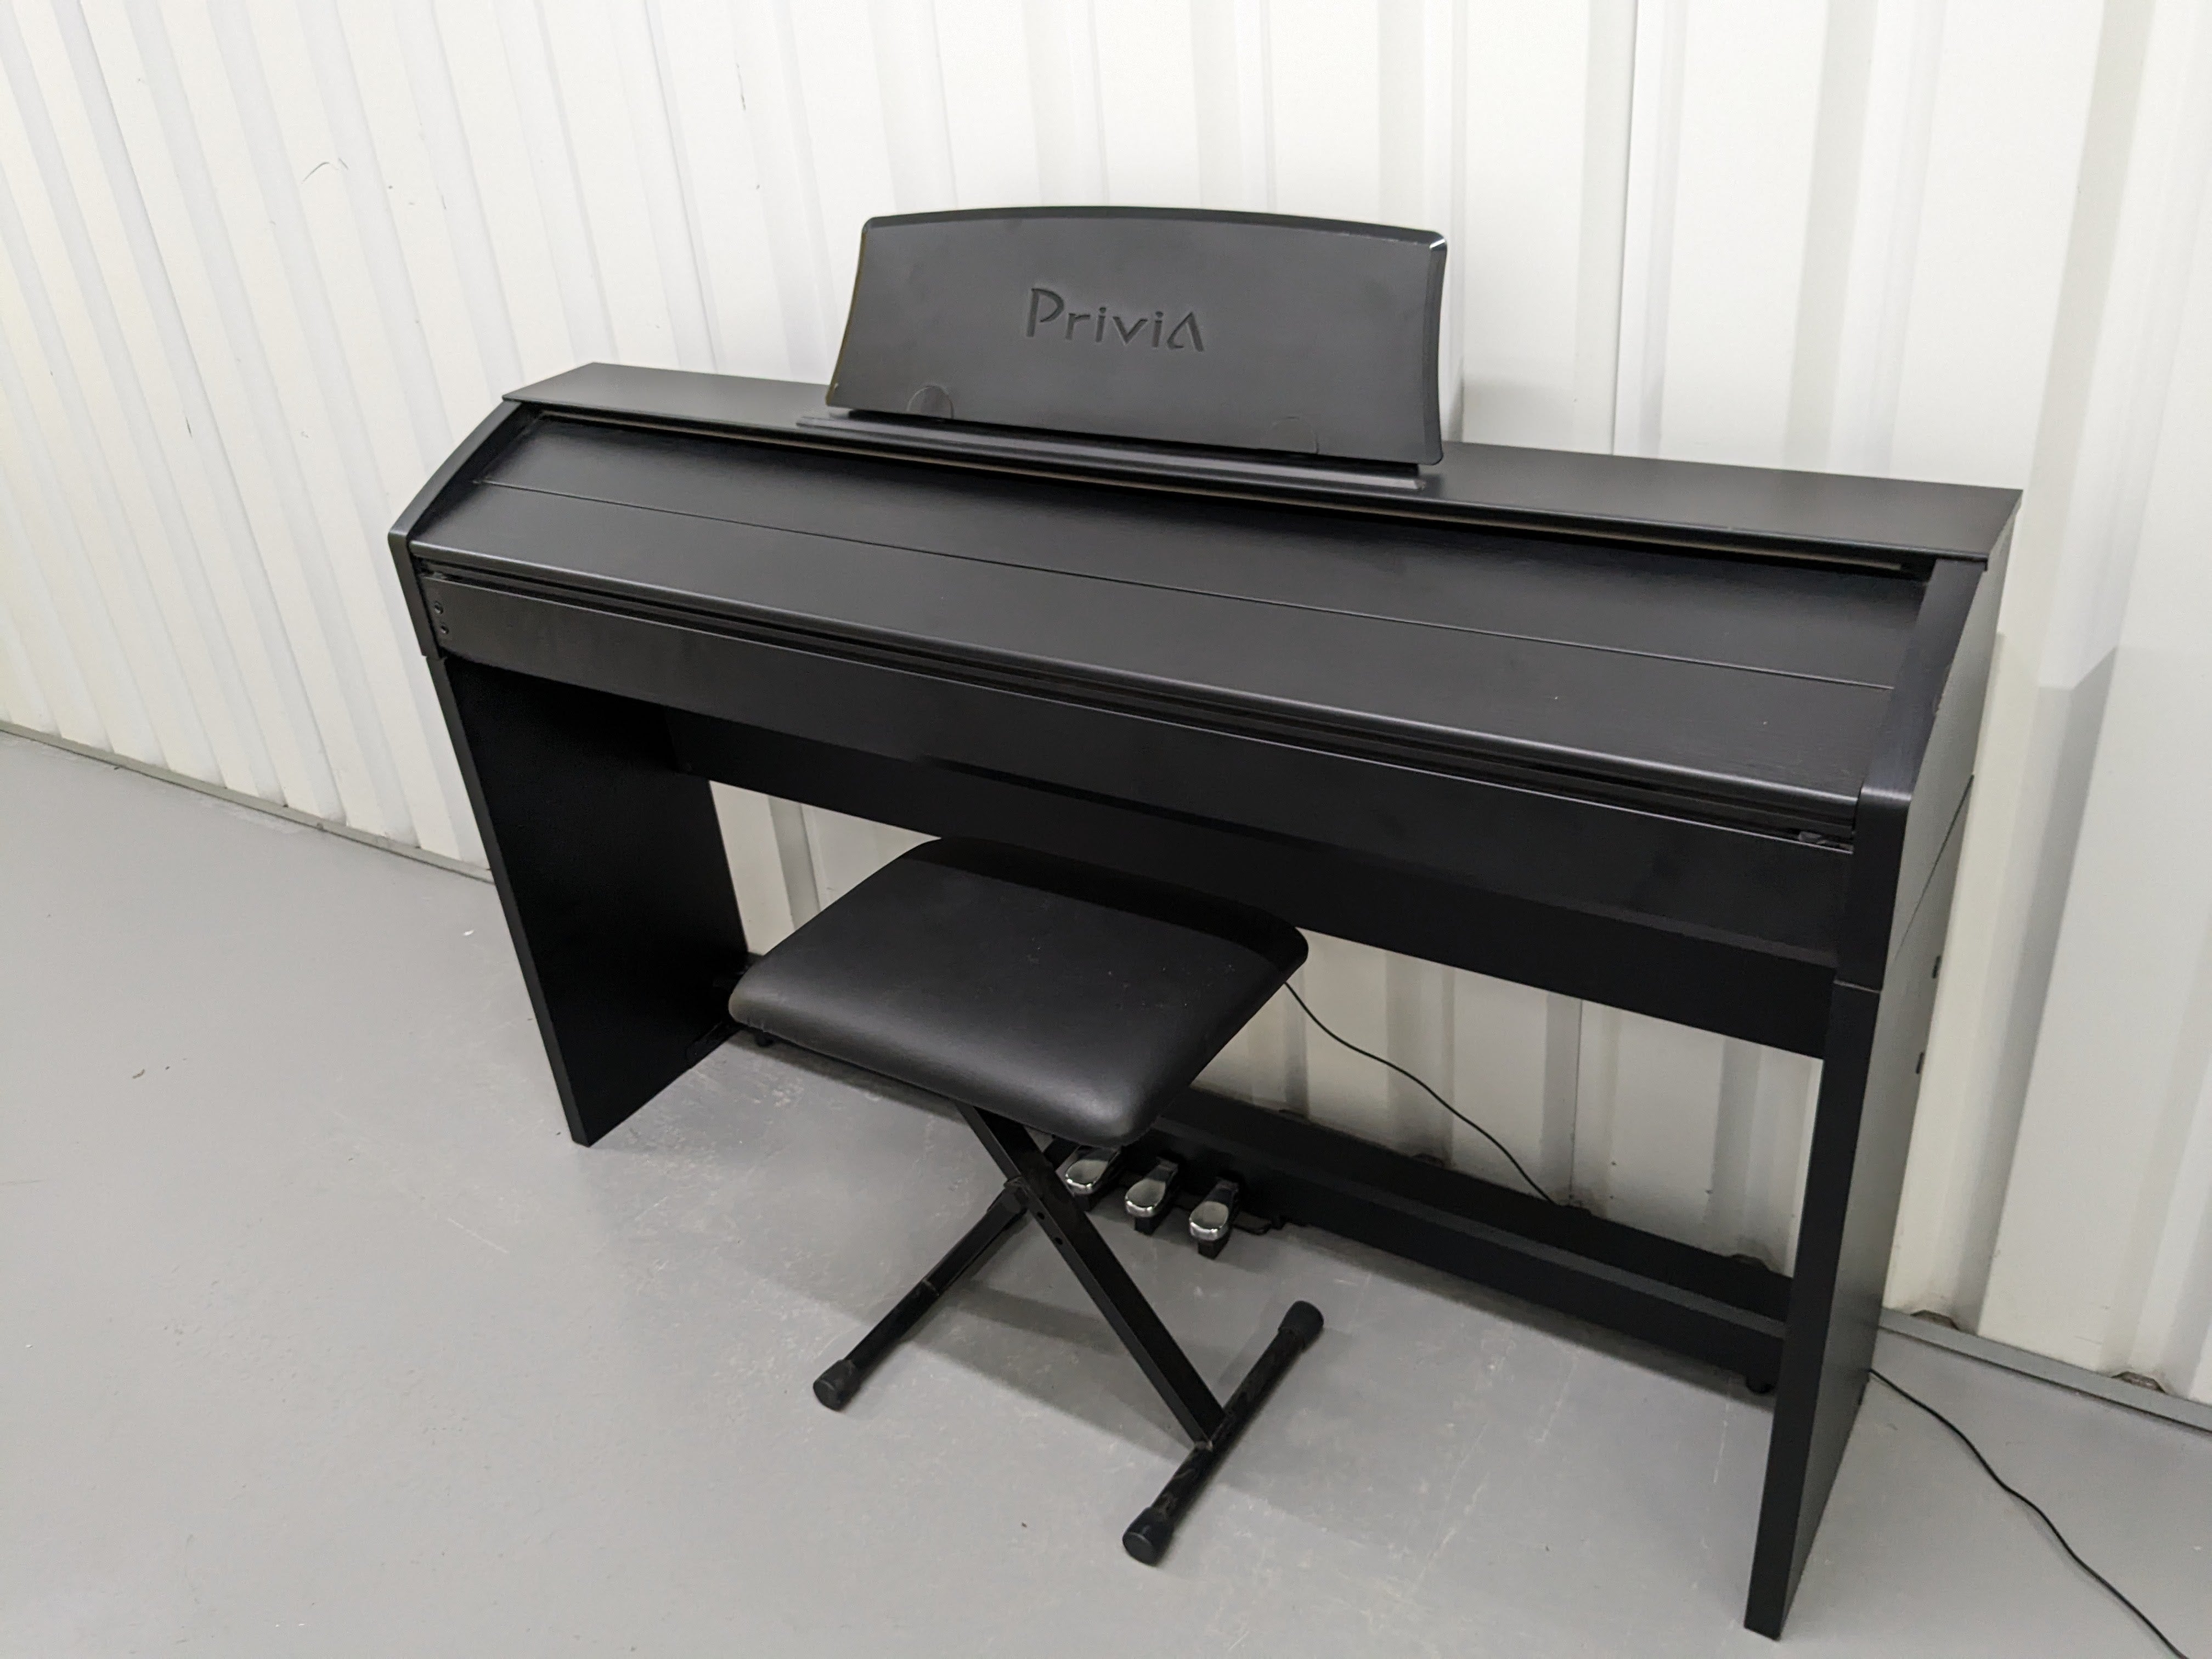 Casio Privia PX-760 Slim Digital Piano and stool satin black stock 